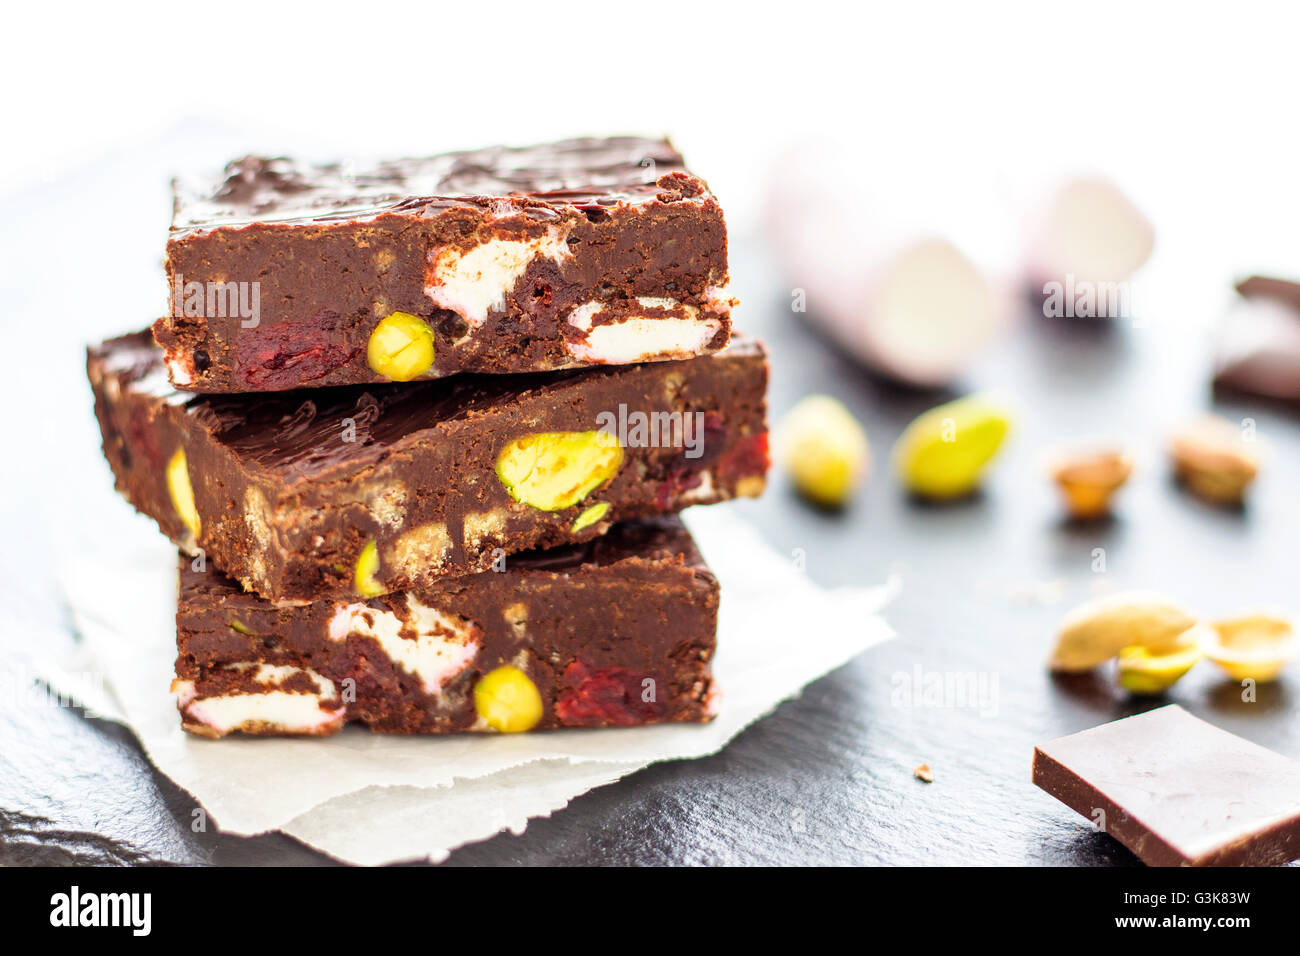 Dunkle Schokolade steiniger Weg - Dessert Stockfoto